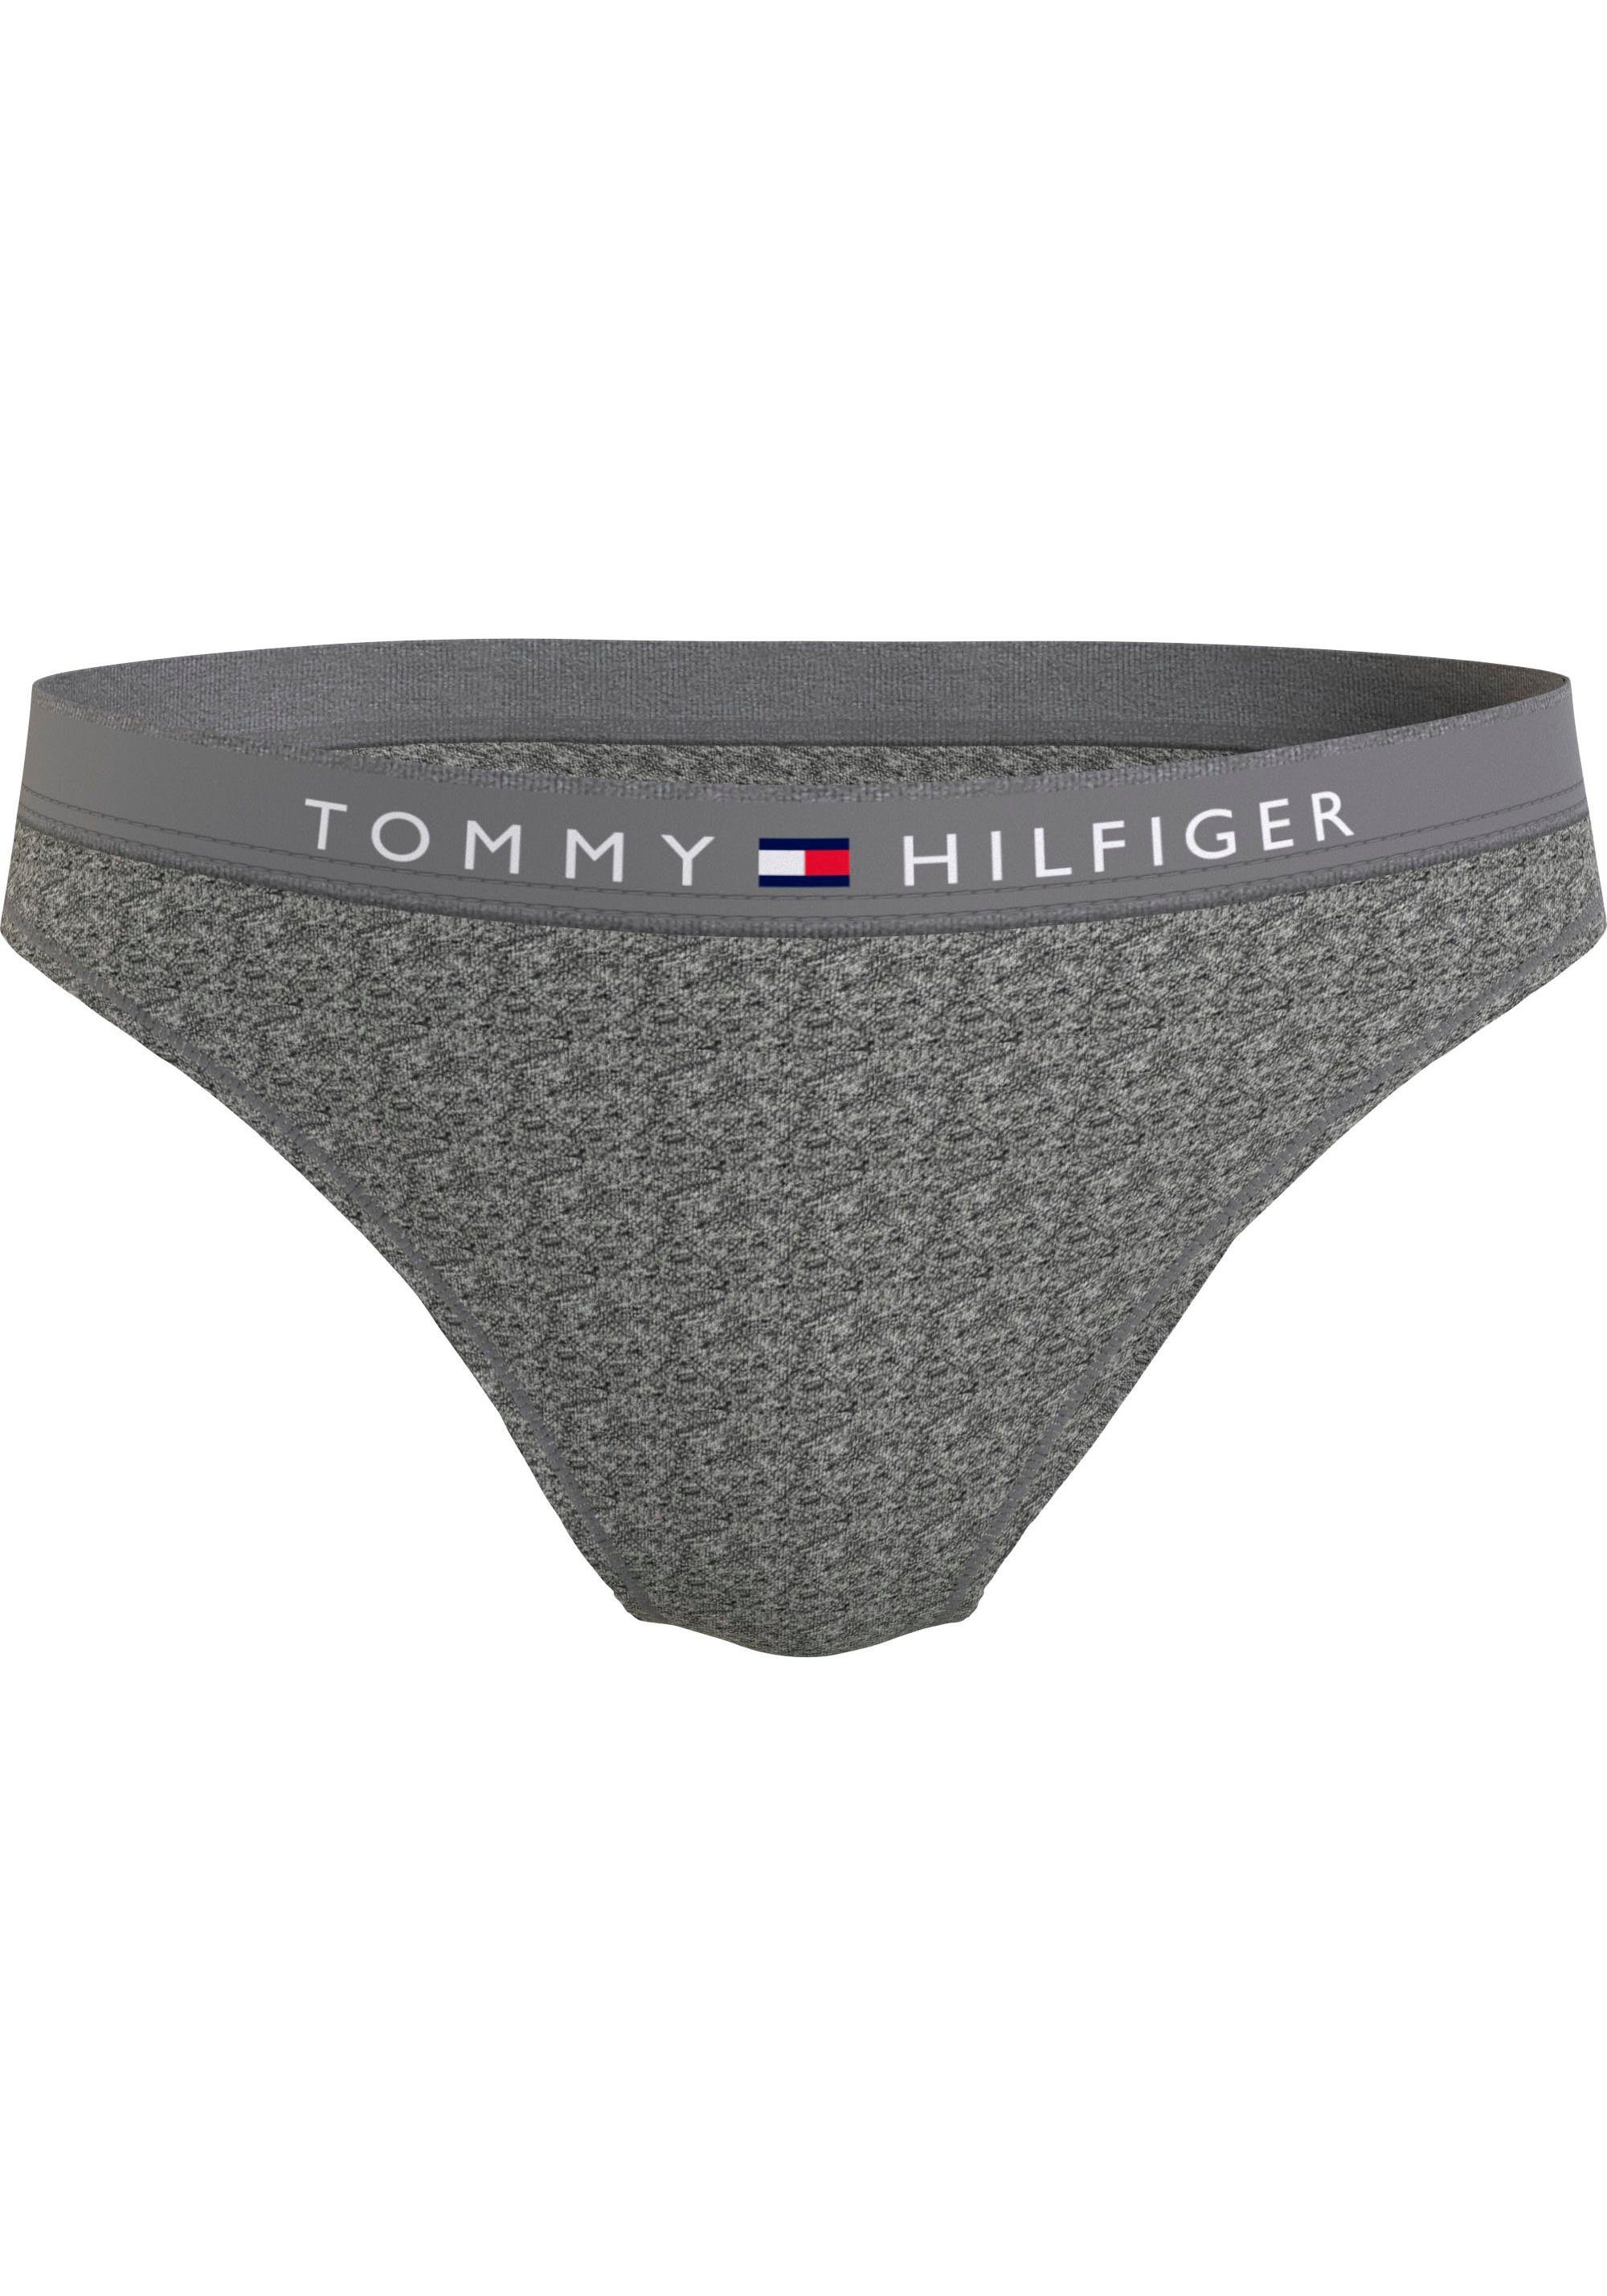 Tommy Hilfiger Underwear Bikinislip BIKINI (EXT SIZES) mit Tommy Hilfiger Logobund Dark_Grey_Ht